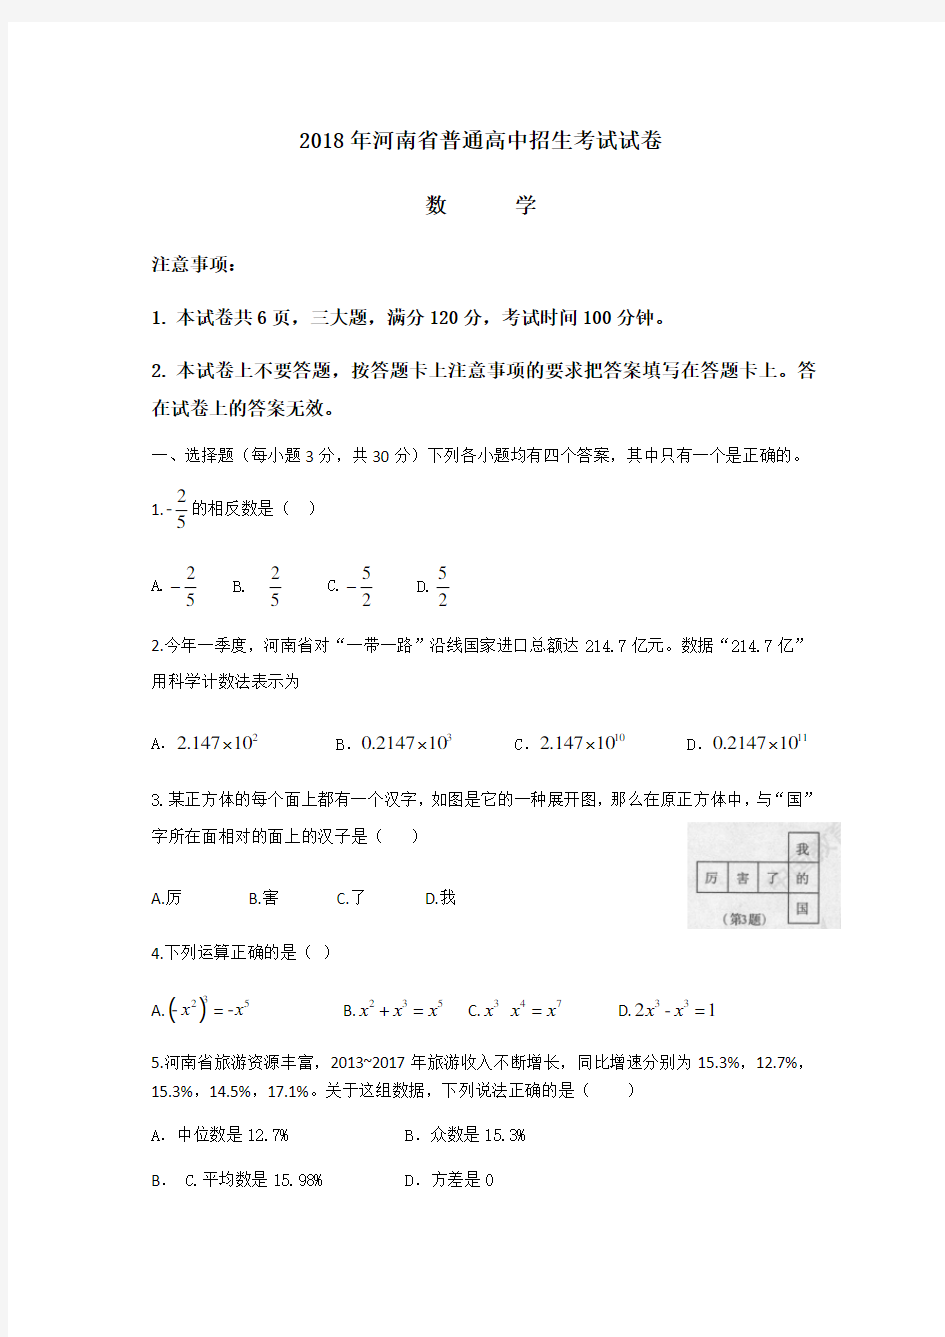 2018年河南省普通高中招生考試數學試卷及答案